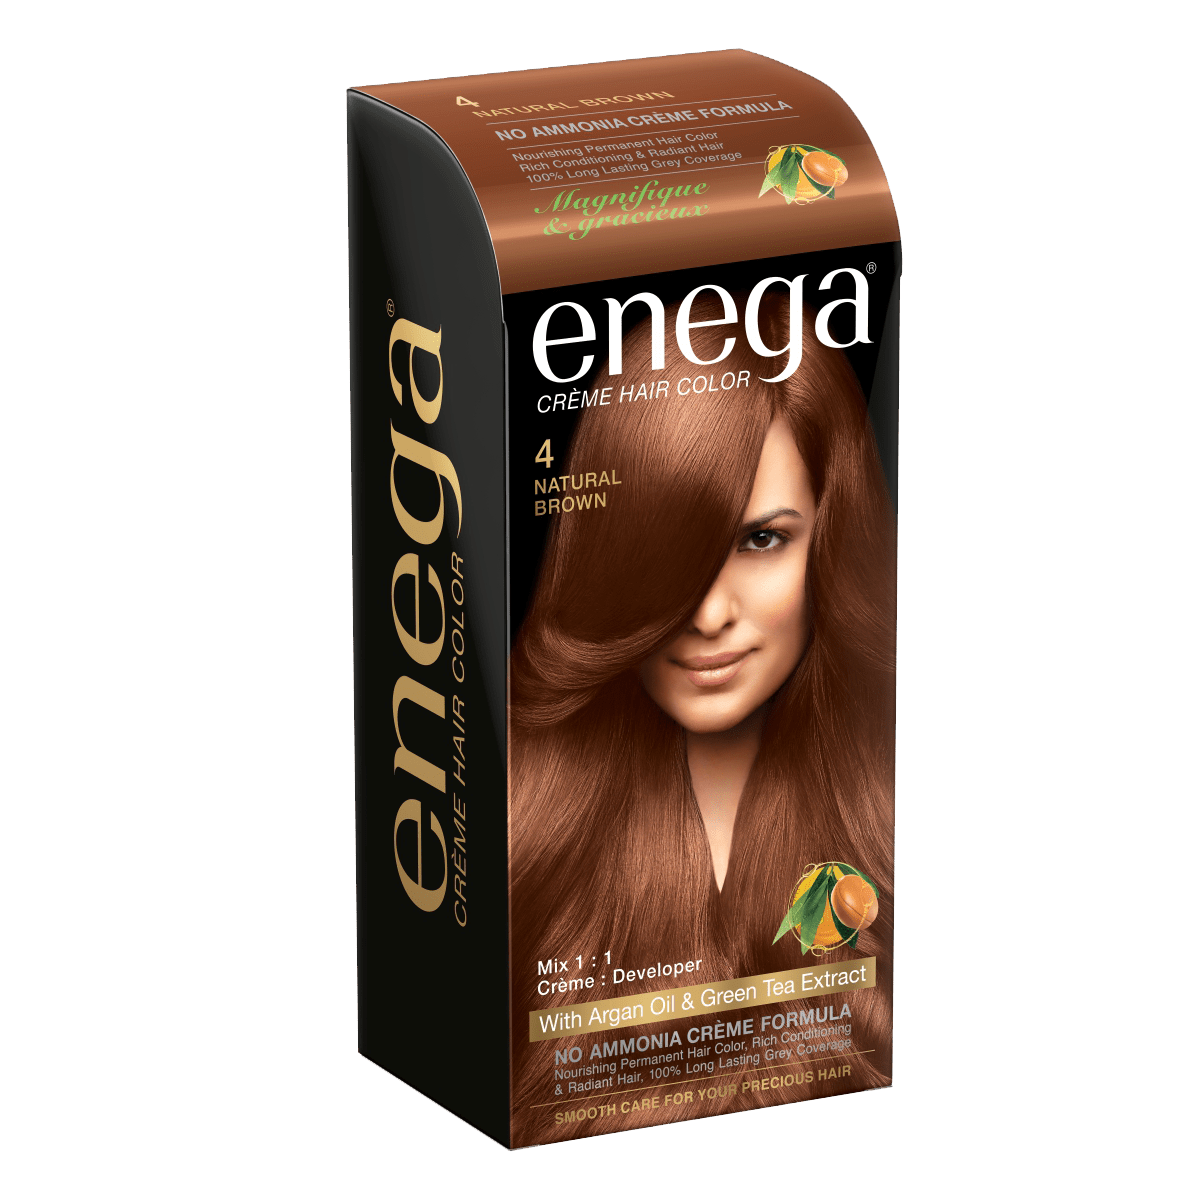 Enega Creme Hair Color – Natural Brown – Prem Green Pvt Ltd